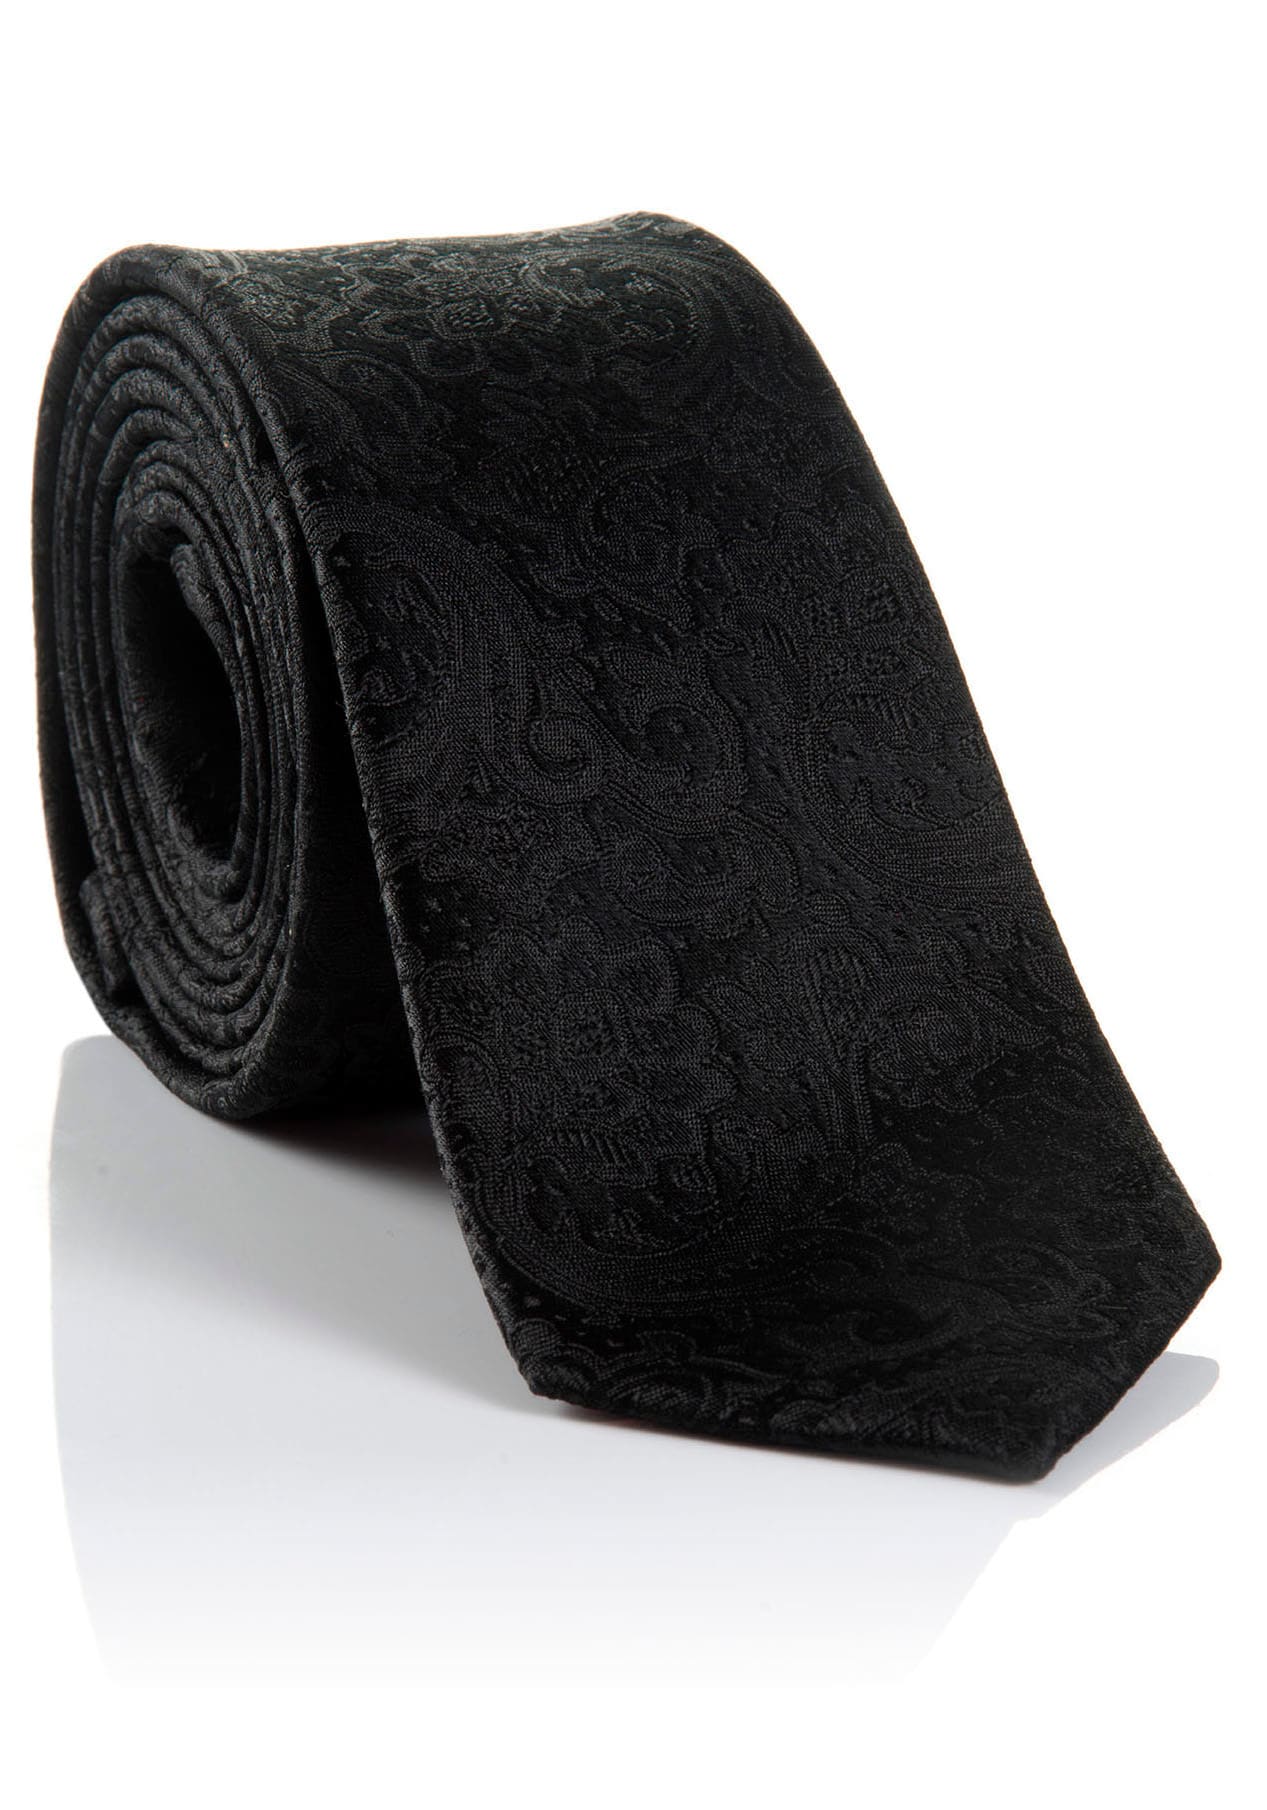 MONTI Krawatte »LUAN«, aus reiner Seide, Paisley-Muster online kaufen